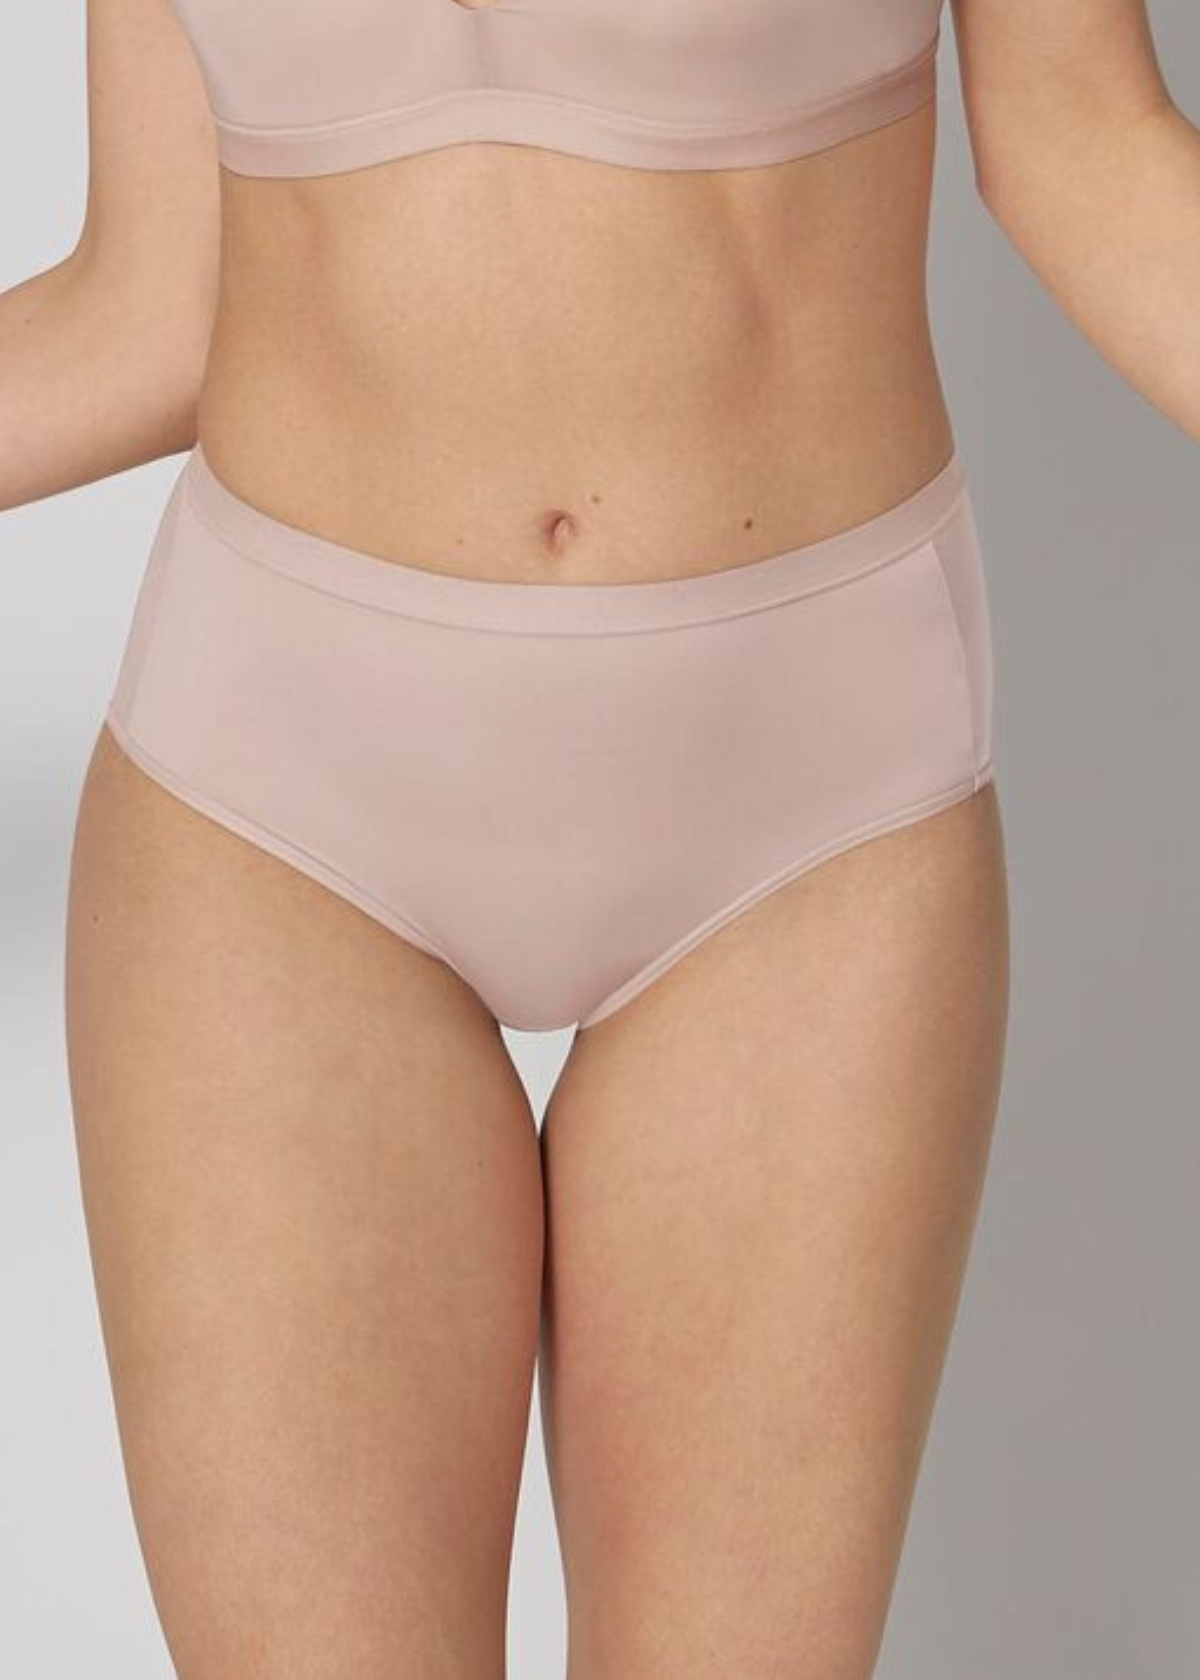 SITM Spring 2022 Underwear Catalog by Just Got 2 Have It! - Issuu